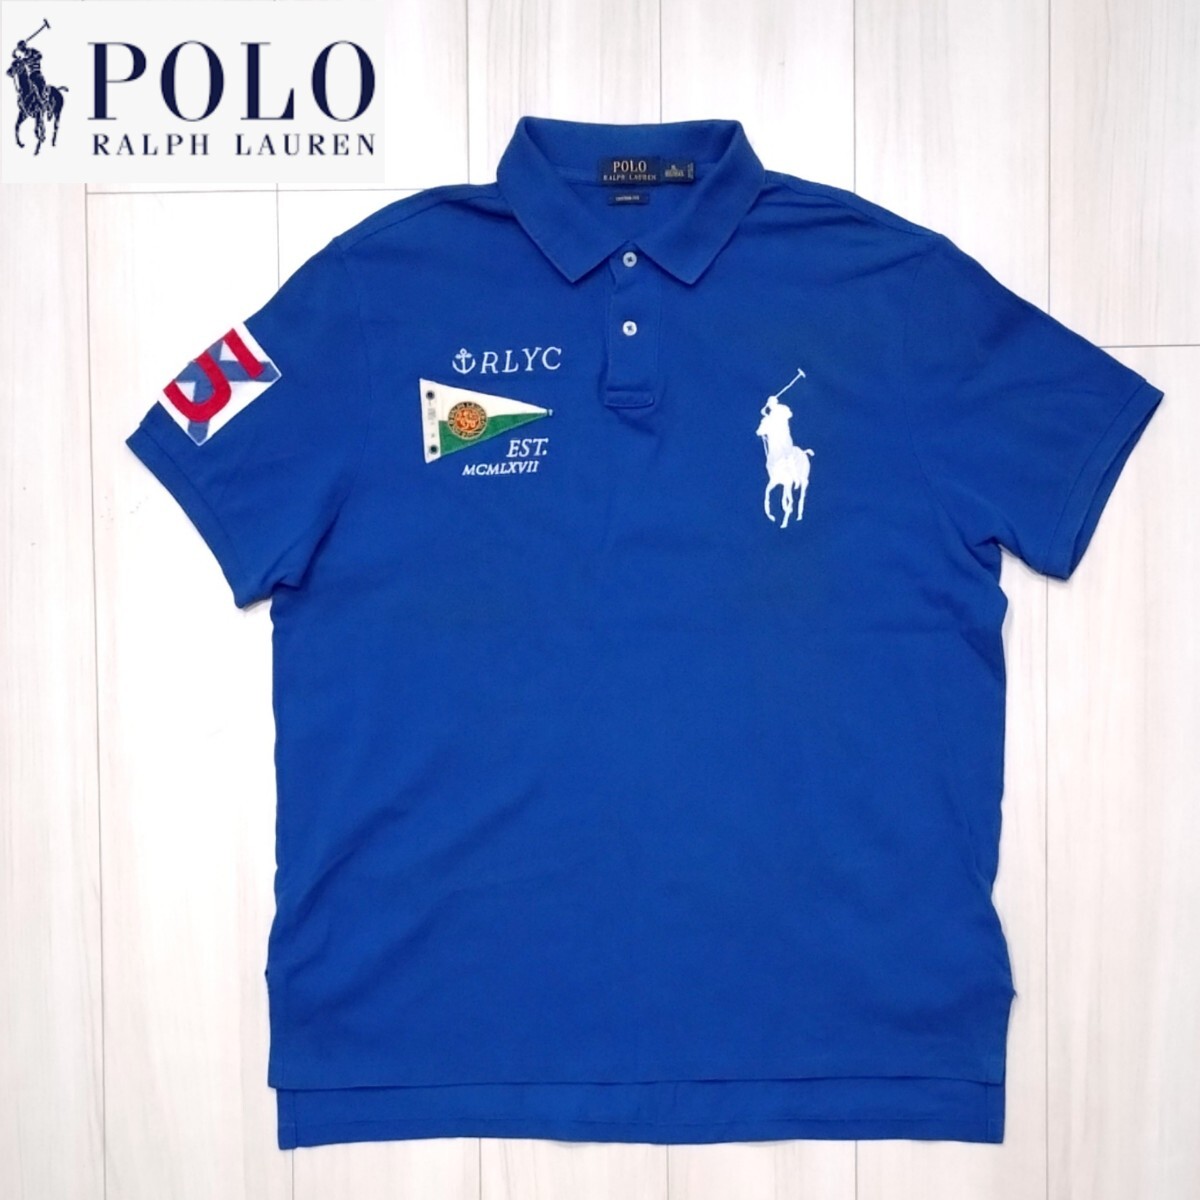 新品に近い POLO RALPH LAUREN ビッグポニー ポロシャツ XL メンズ LL-3L 半袖シャツ ラルフローレン ゴルフ 美品_画像1